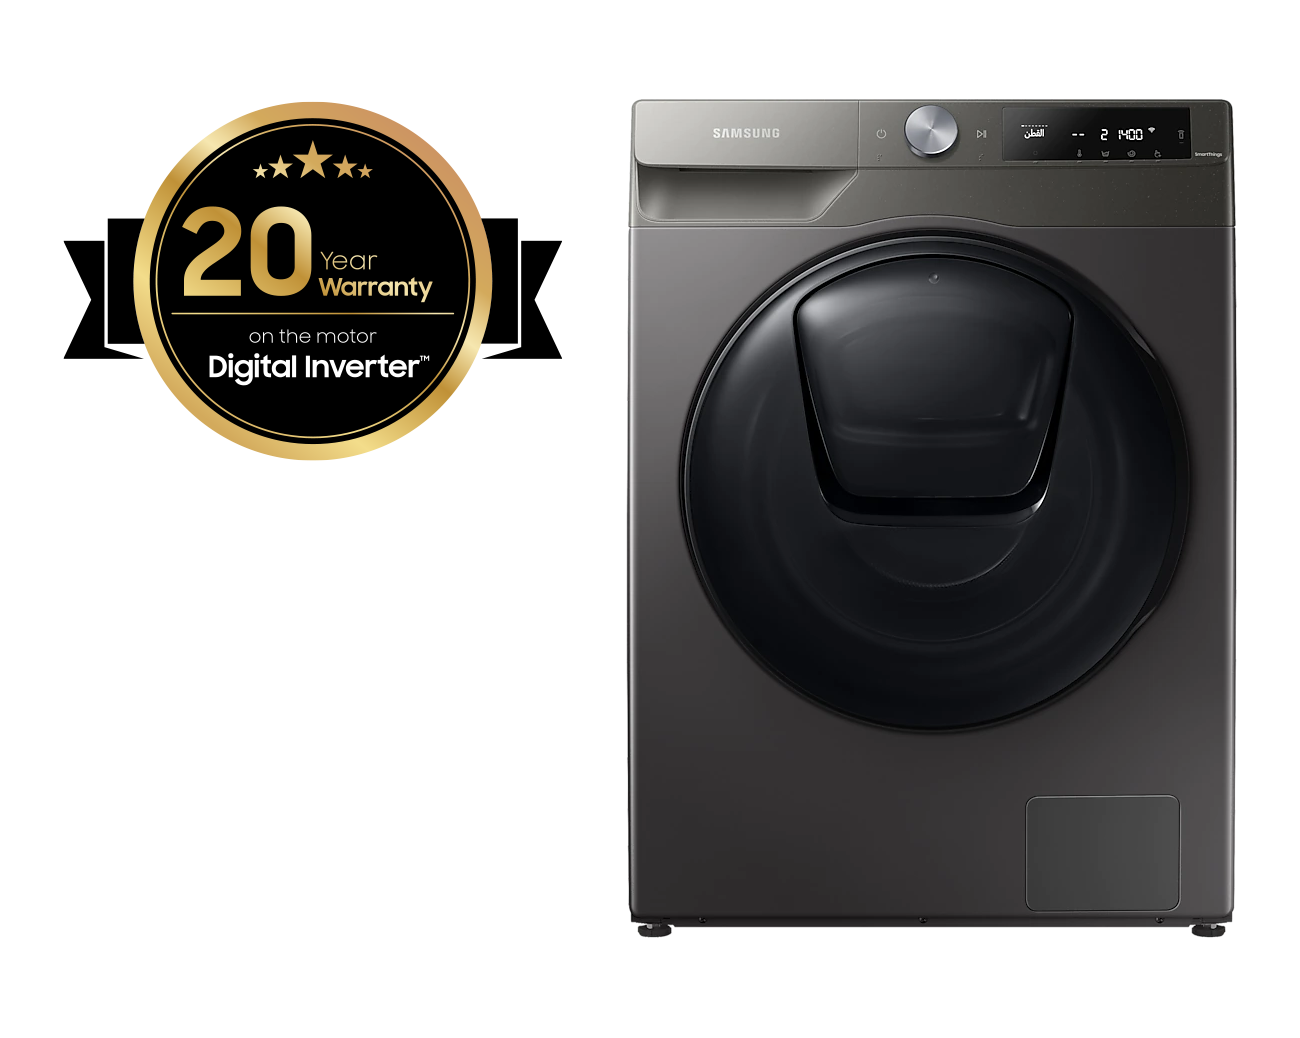 Machine à laver séchante Samsung AddWash EcoBubble 8/6KG 1400 t